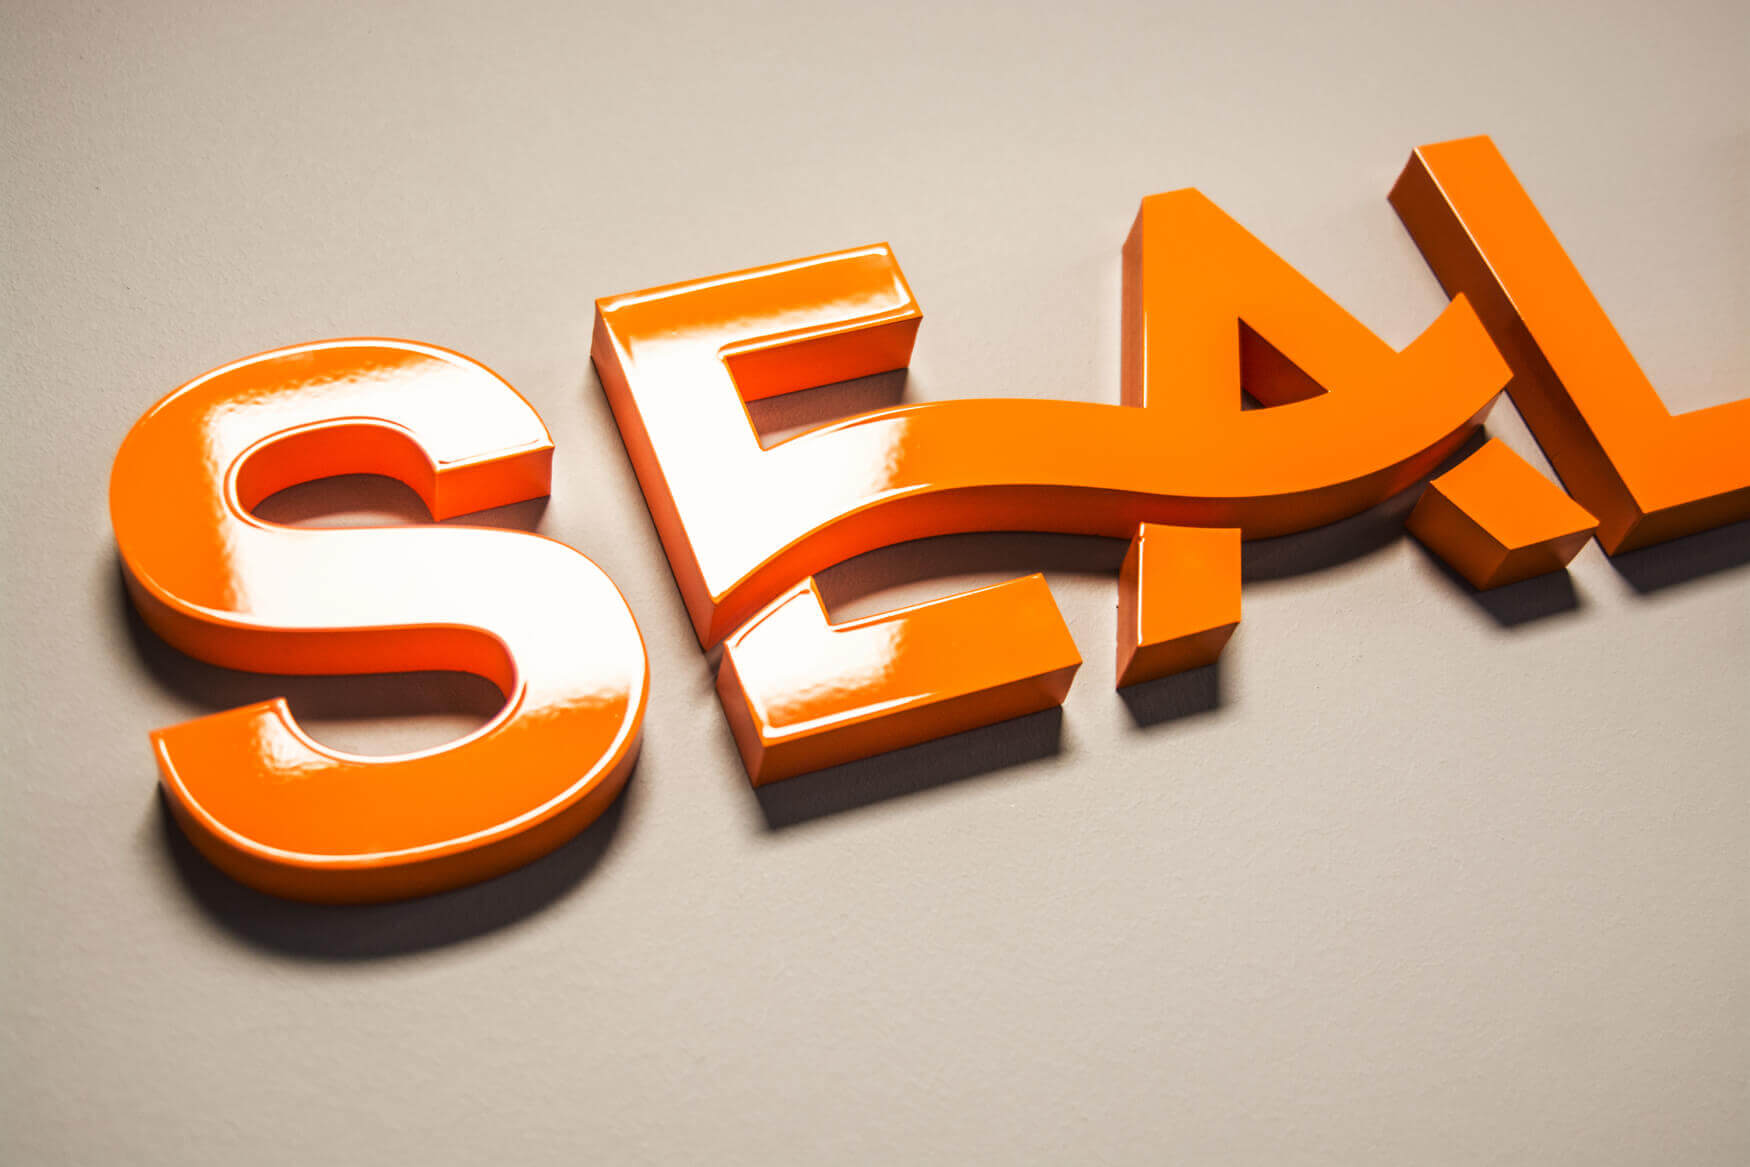 Sealand - Sealand - Lettres bloc 3D peintes à la bombe sur un mur